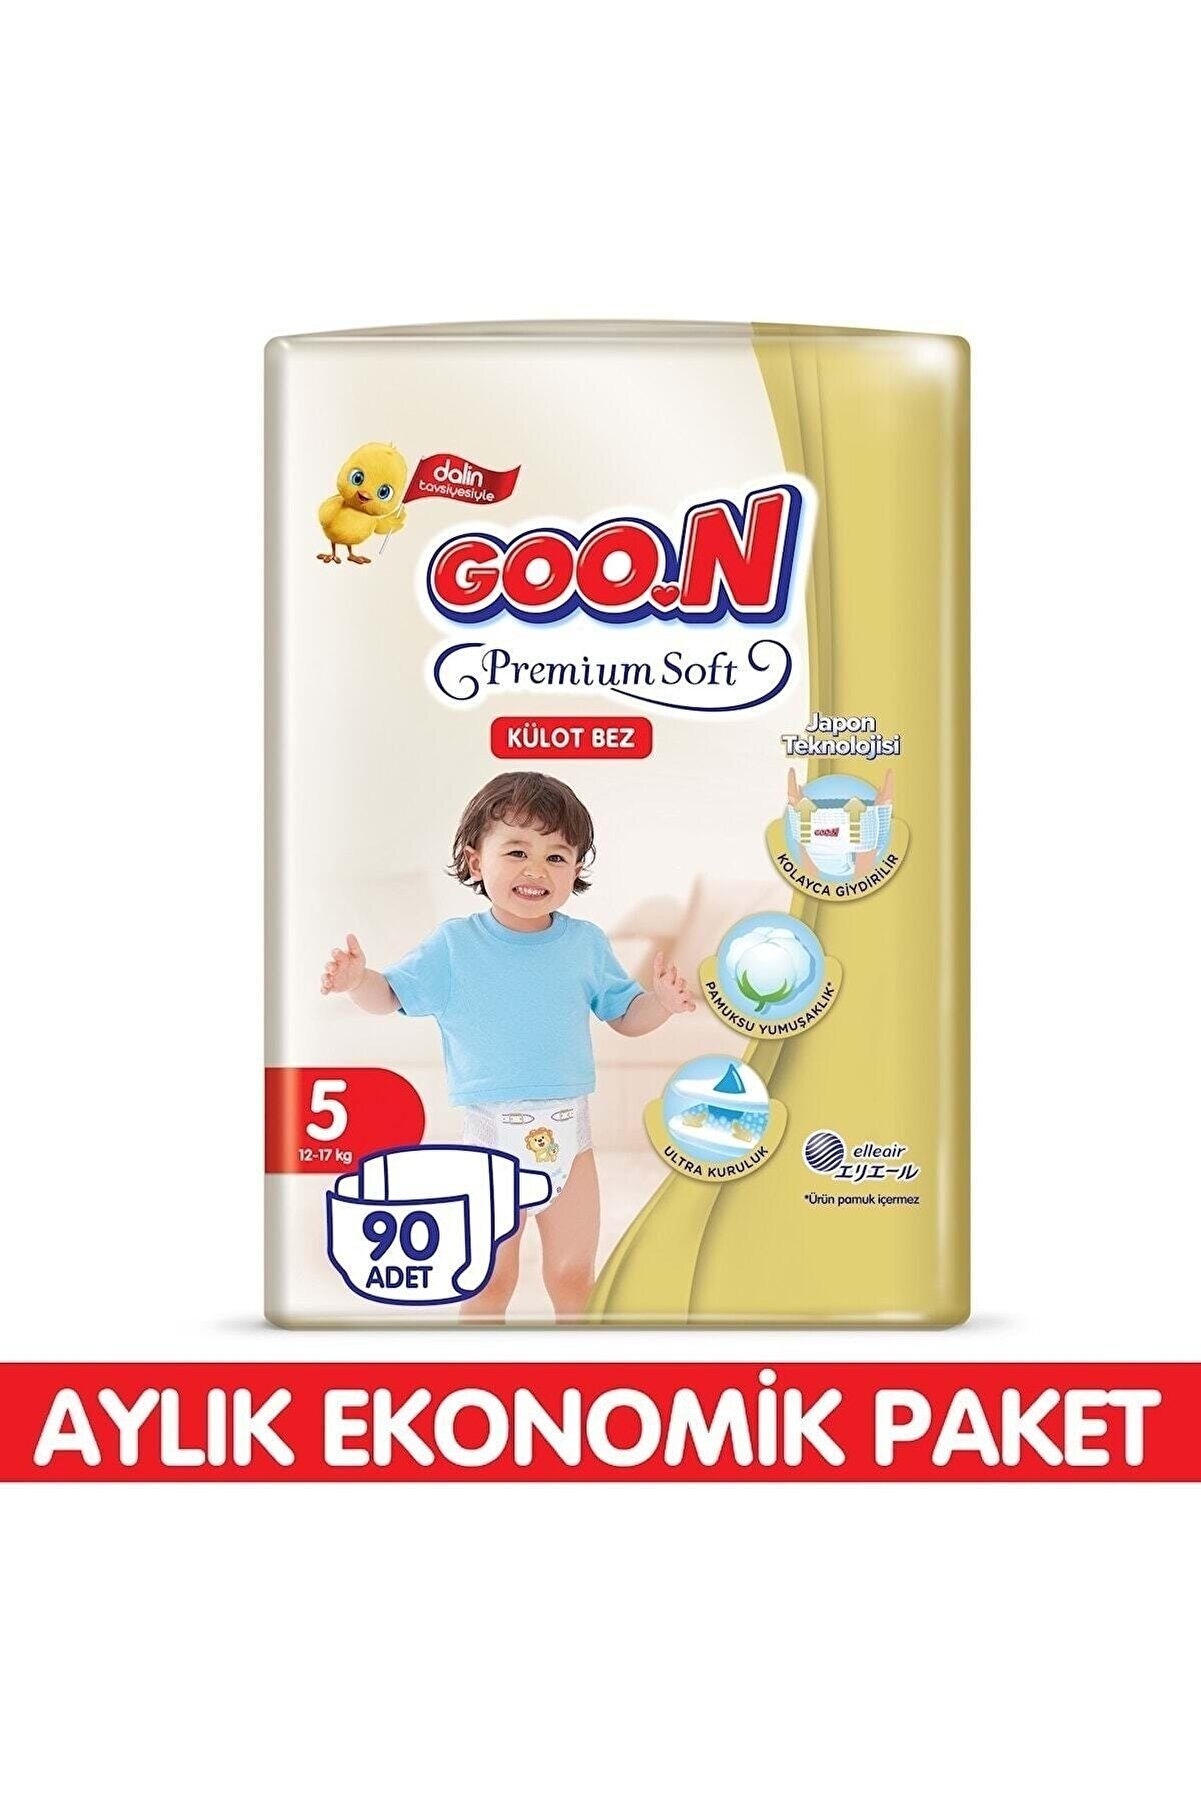 Goo.n Goon Külot Bez Premium Soft 5 Beden 90 Adet